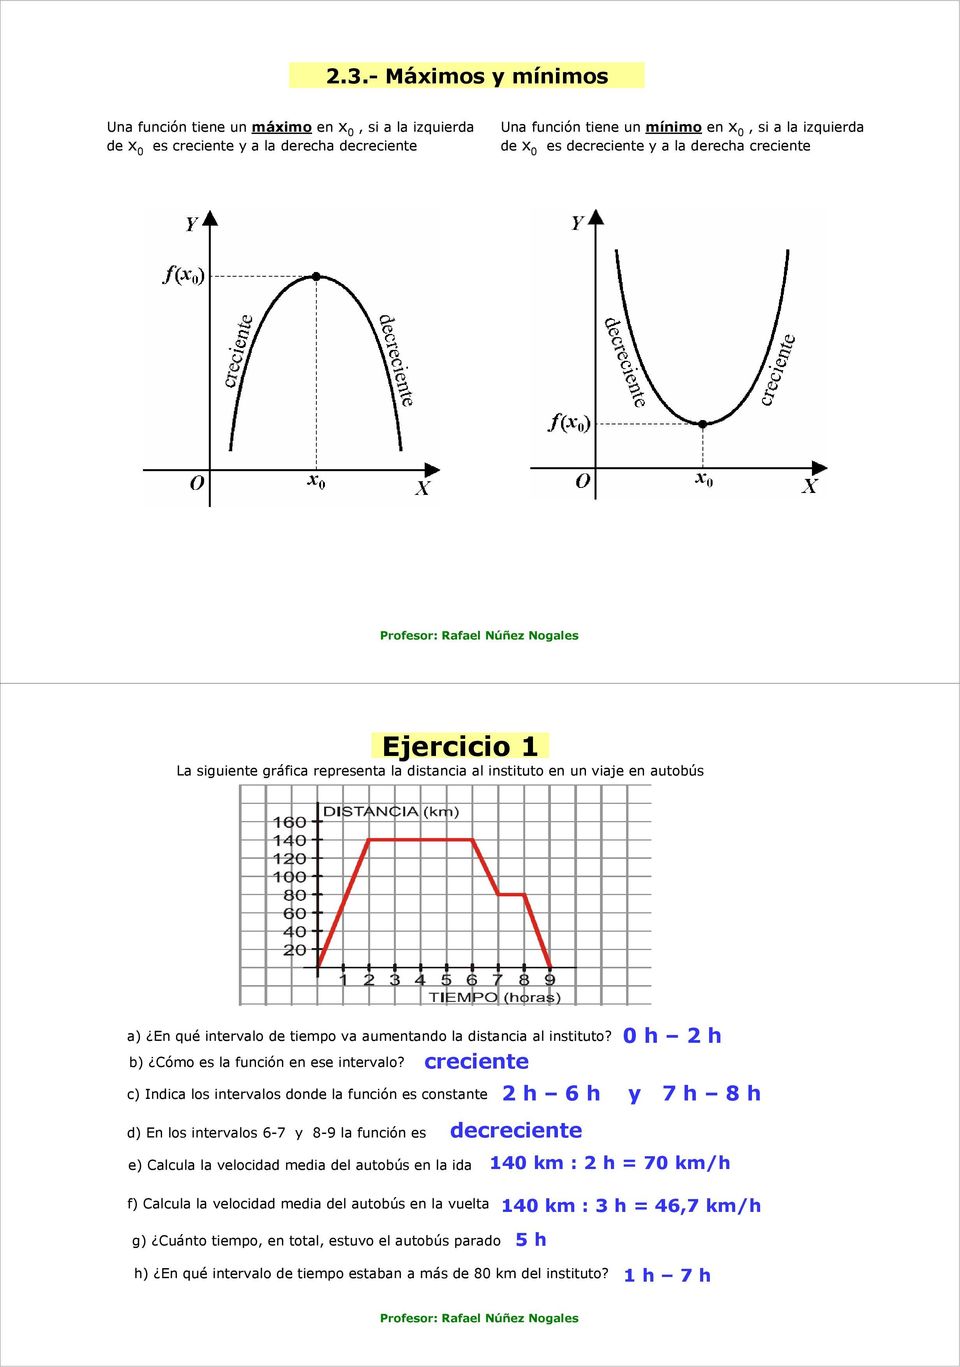 0 h h b) Cómo es la función en ese intervalo?